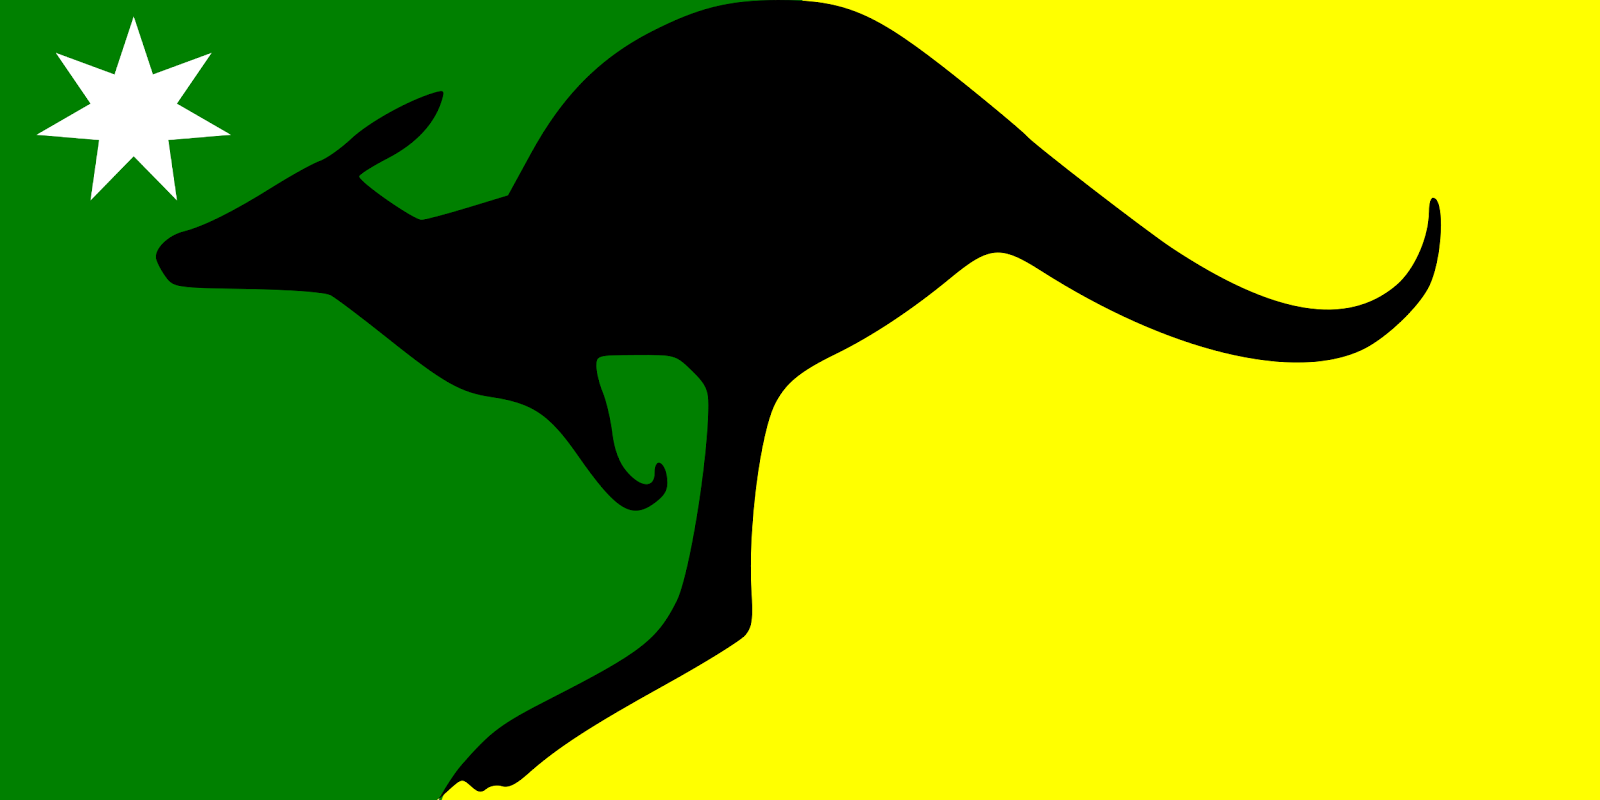 http://1.bp.blogspot.com/-6mndSOPk1Q0/UOlbImZ_QnI/AAAAAAAAB7U/8yrQ28SuqpQ/s1600/amazing+australian+flag.png